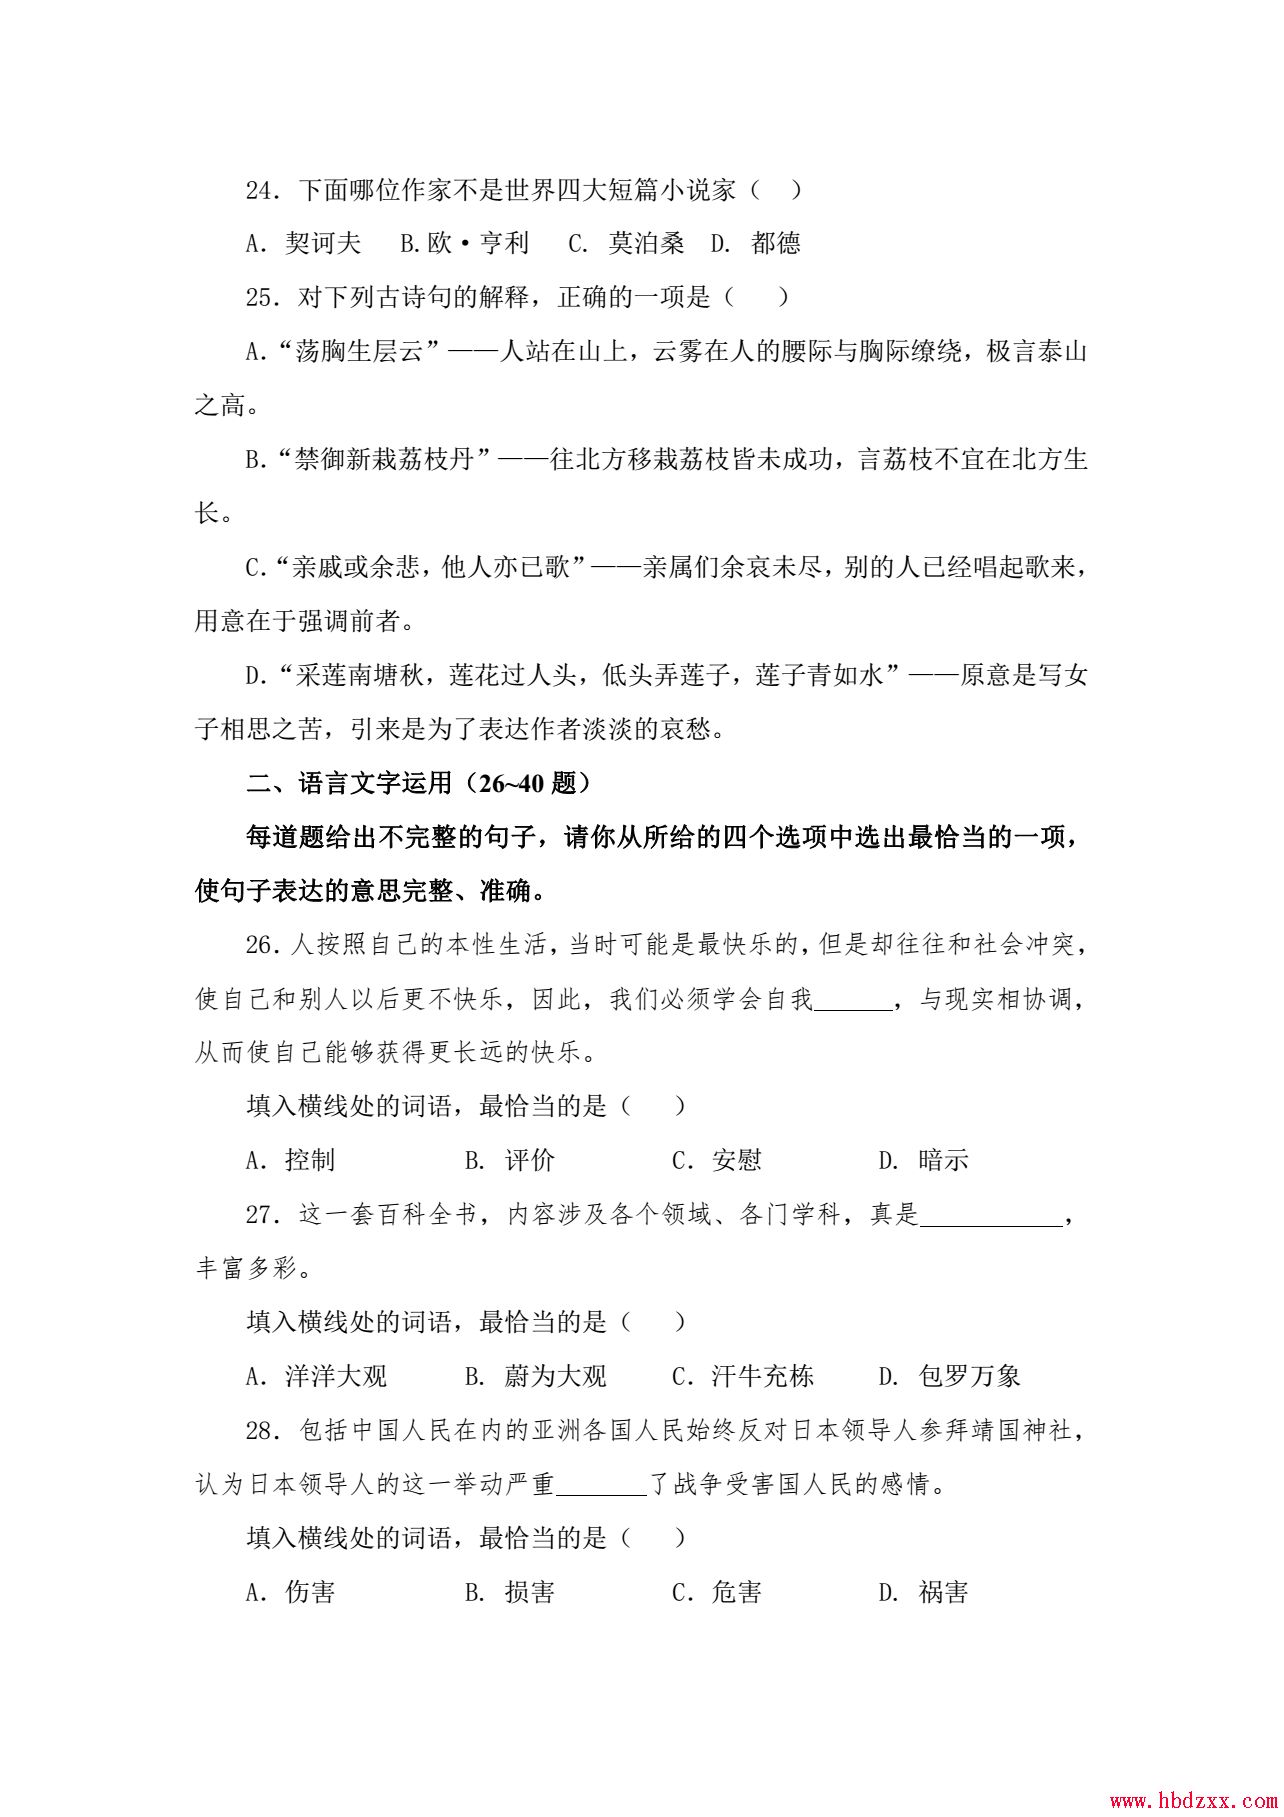 河北App职业技术学院2013年语文单招试题 图3